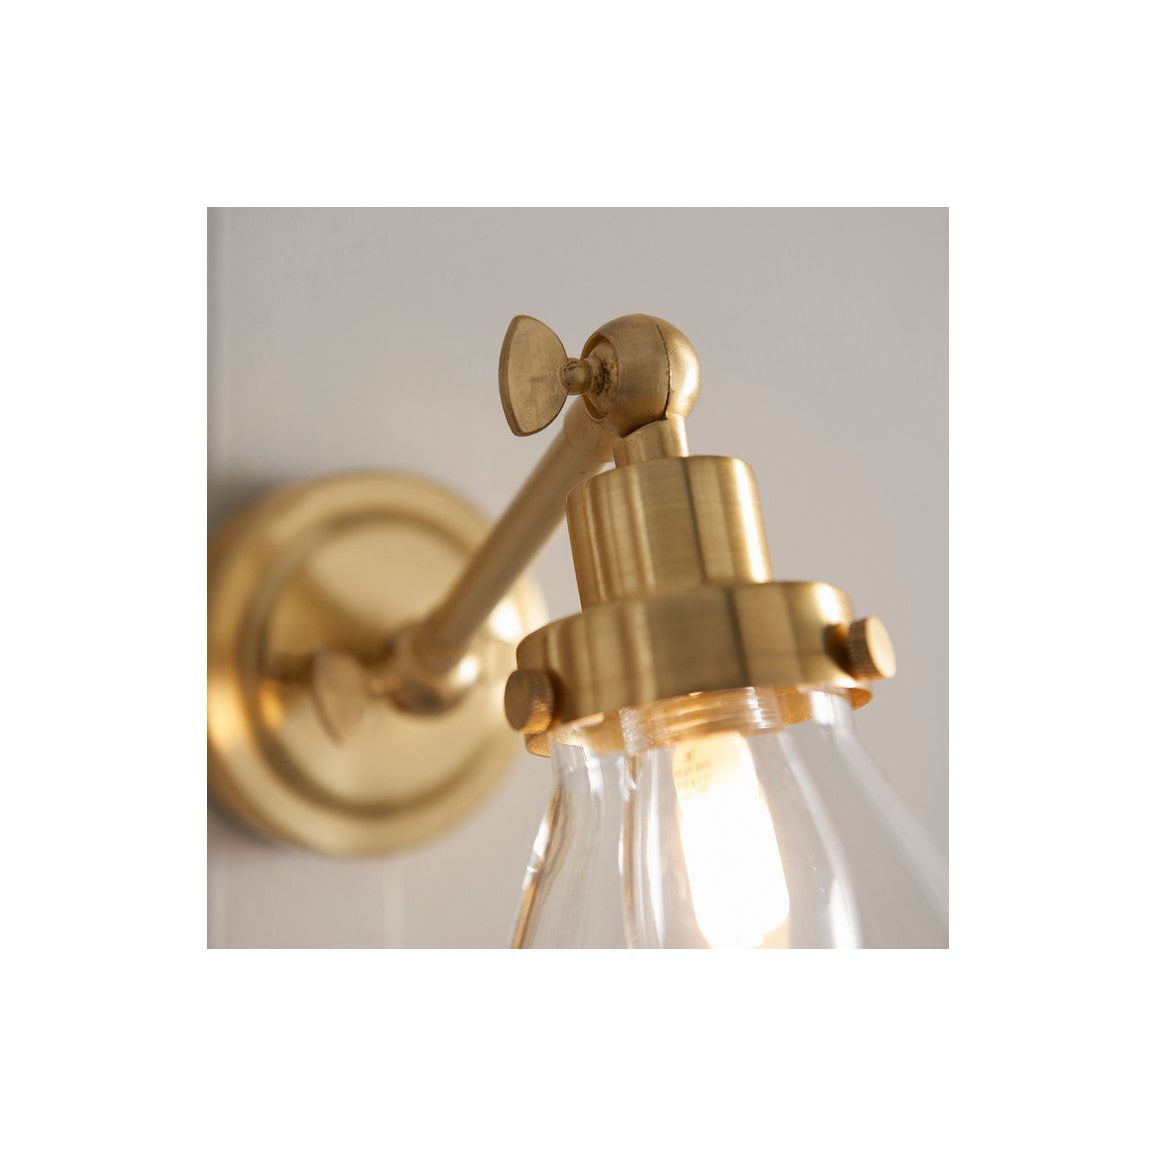 Dundalk Wall Light - Brushed Brass